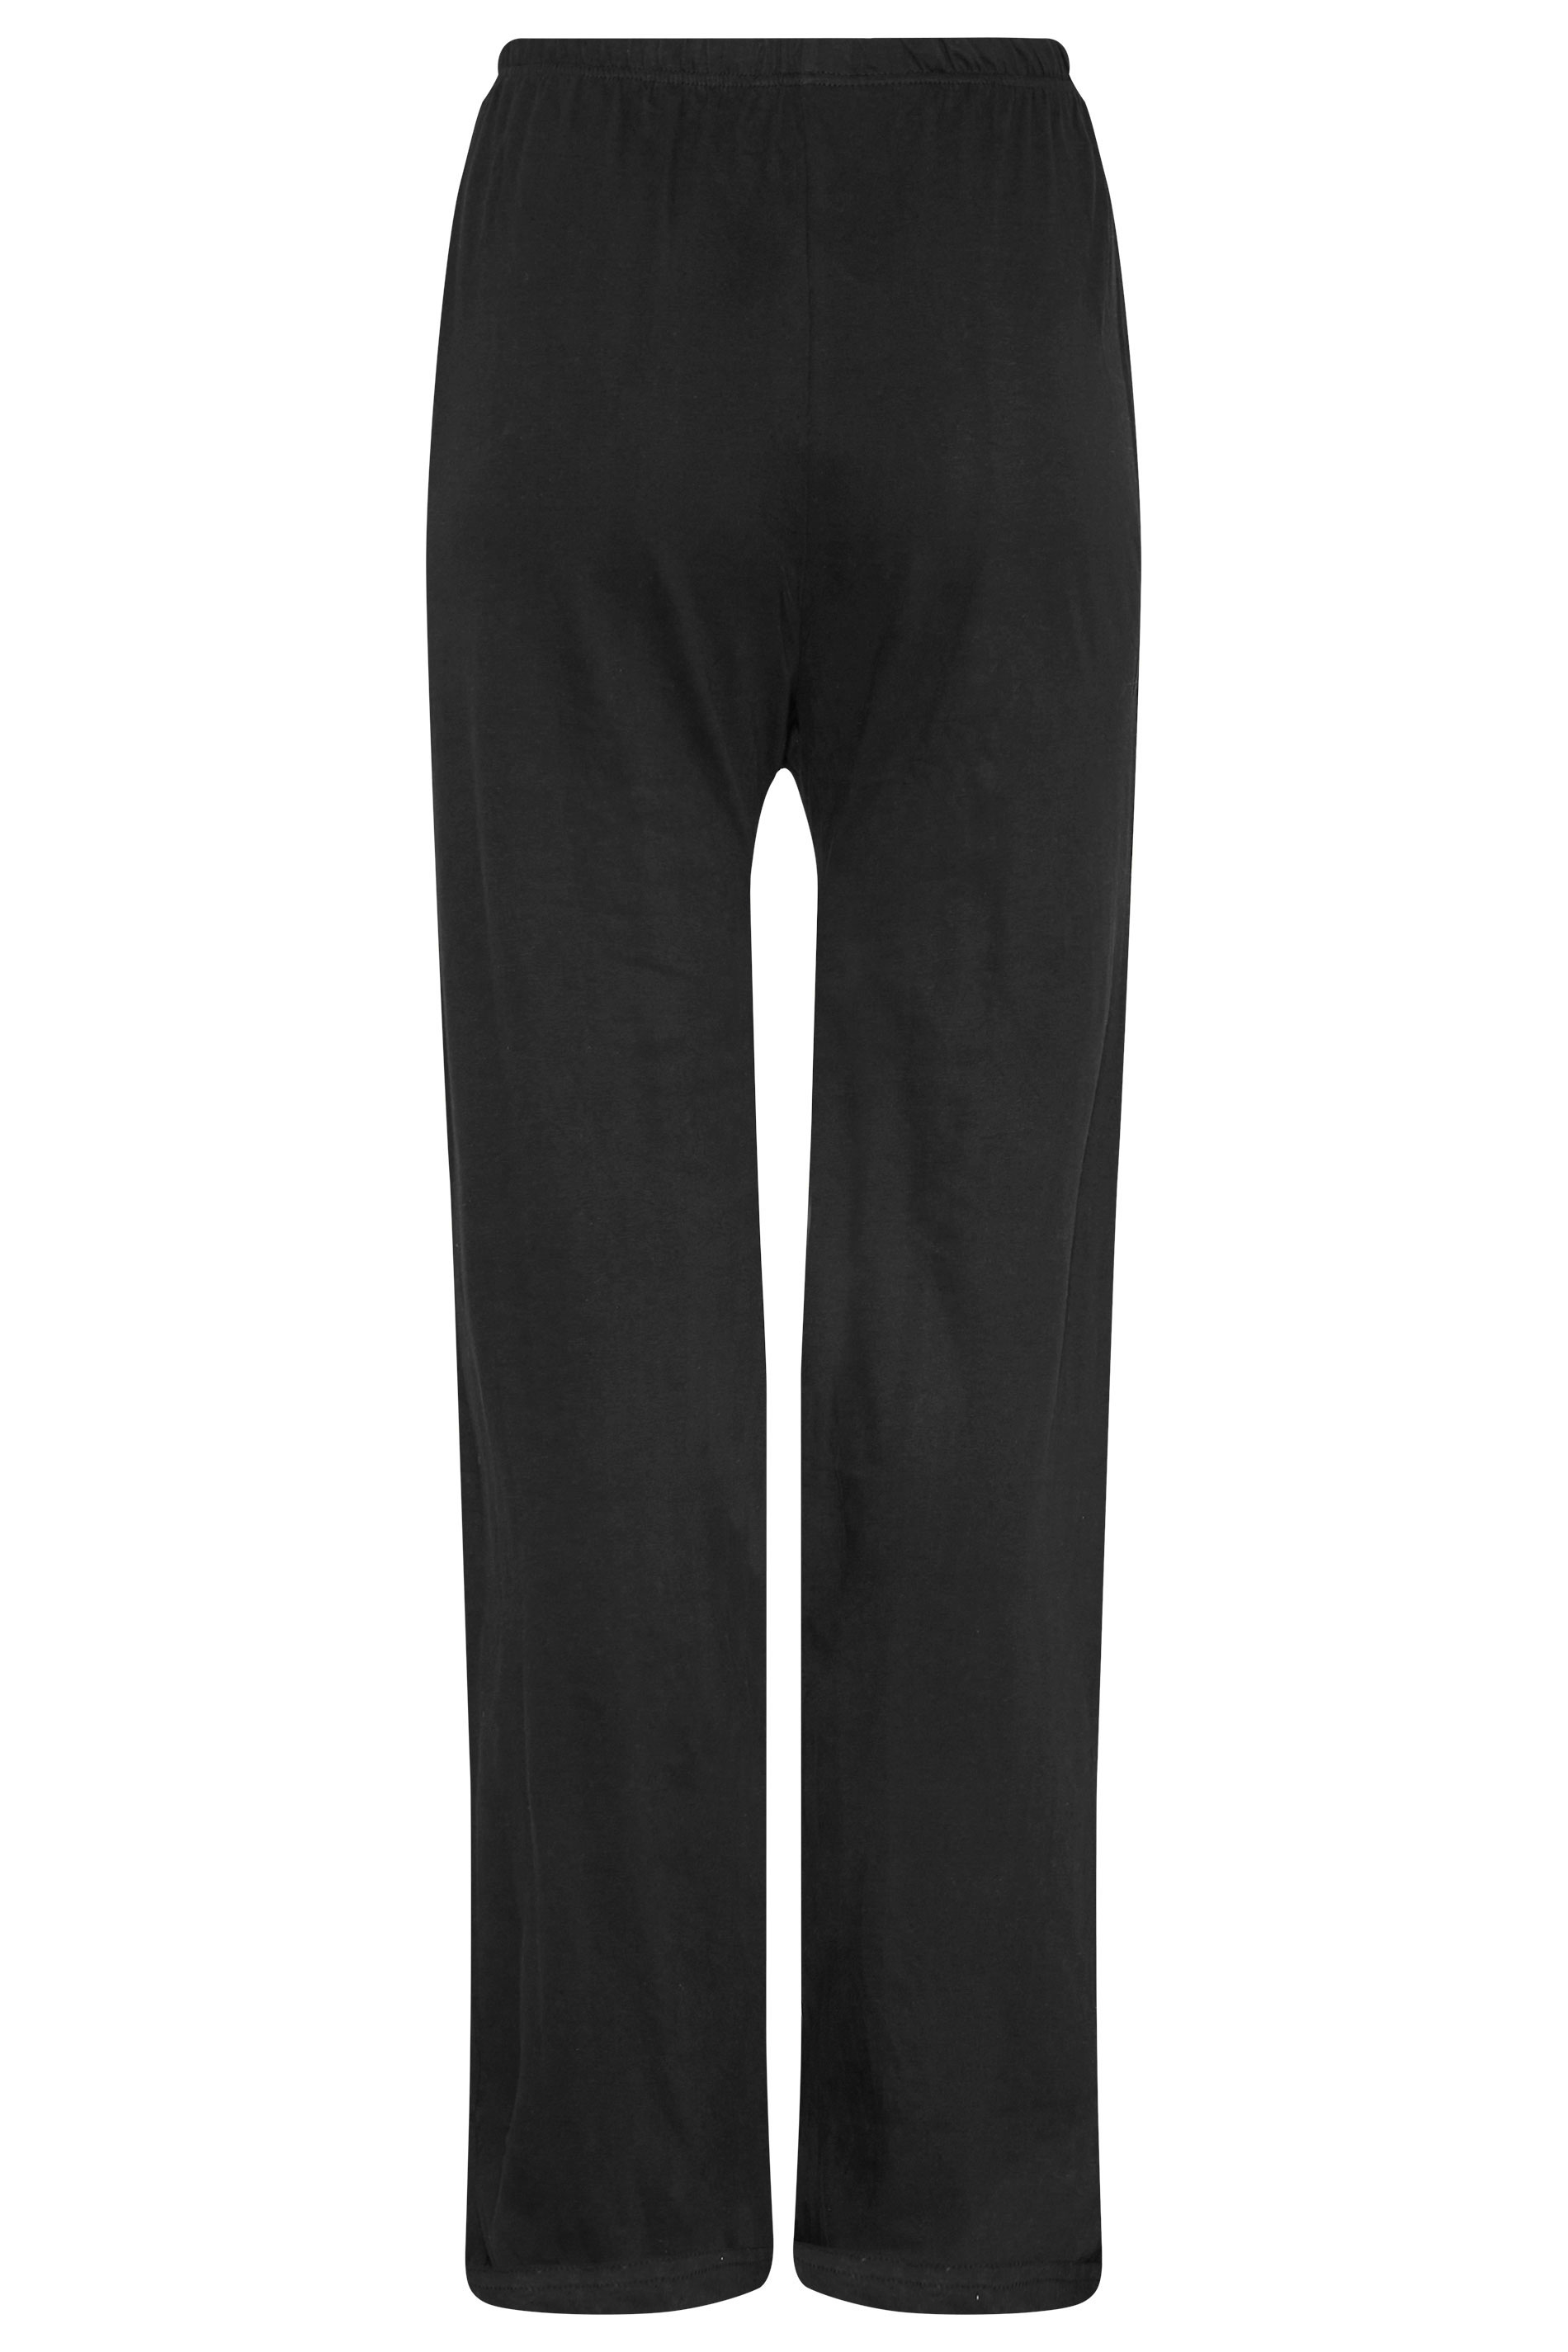 LTS Tall Women's Black Wide Leg Pyjama Bottoms | Long Tall Sally